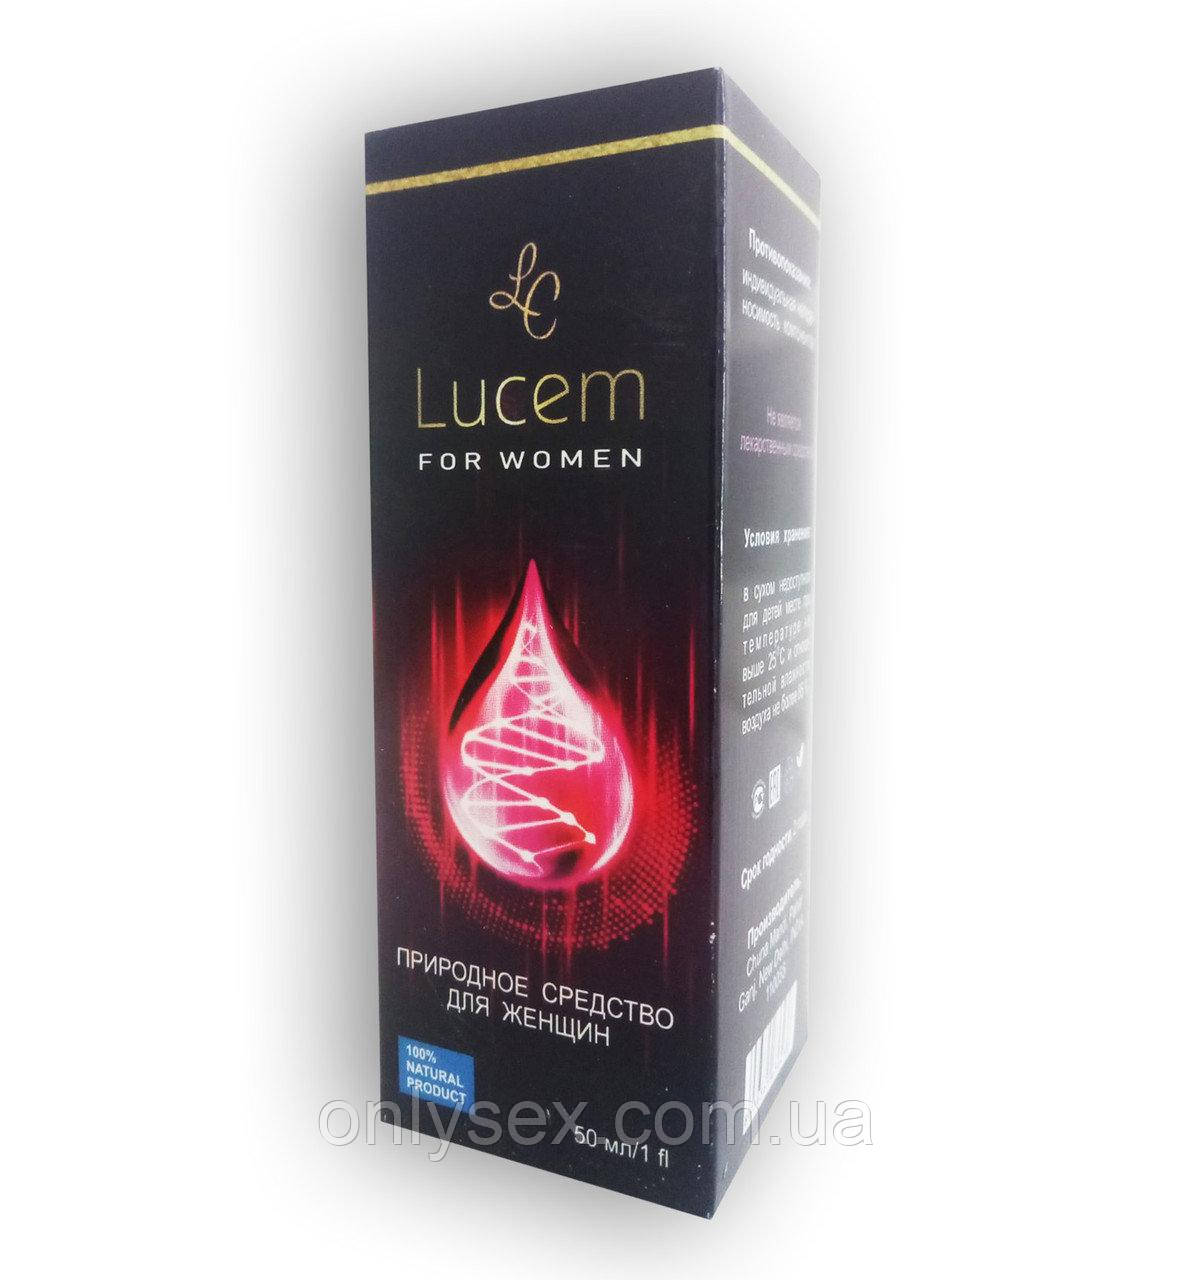 Lucem — Краплі для жіночого здоров'я (Люцем)